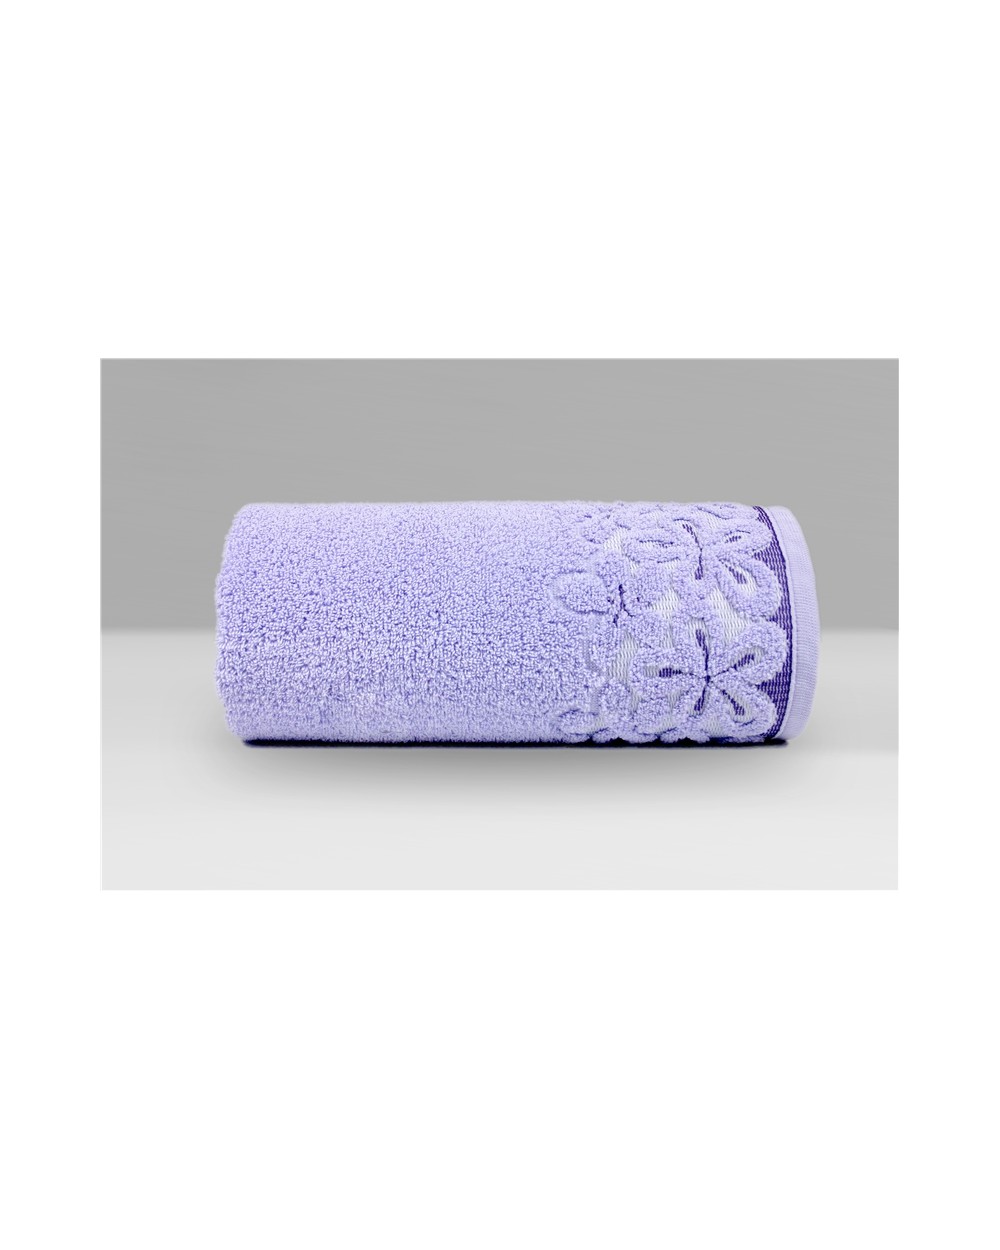 Ręcznik Bella mikrobawełna 70x140 lawendowy